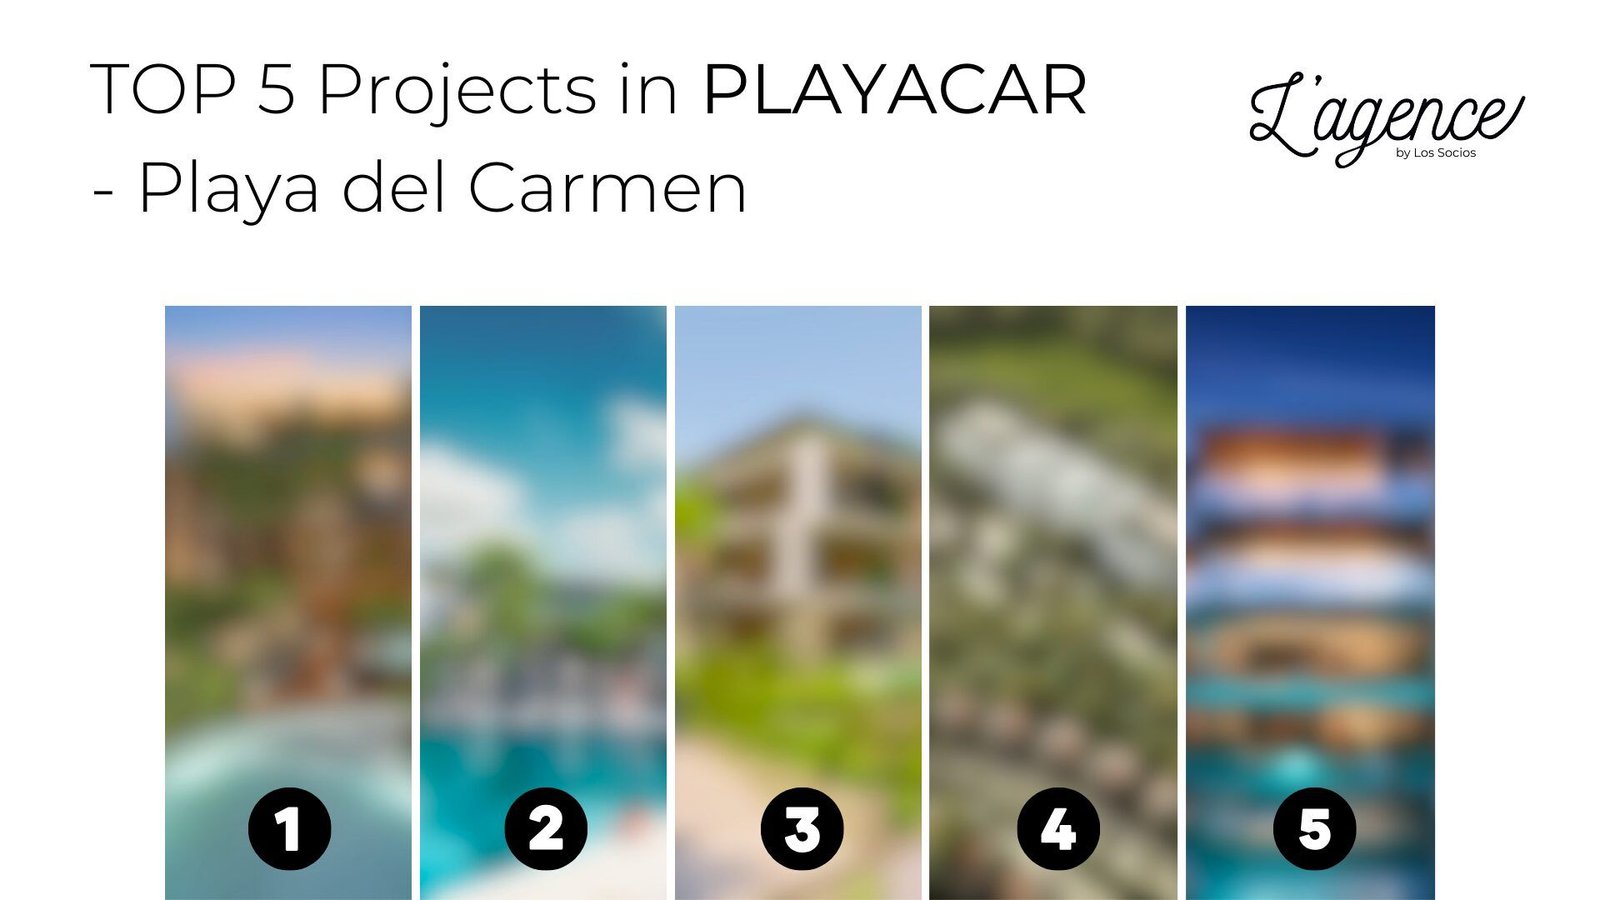 Gobernador 28: Departamentos Exclusivos de Lujo en Playa Del Carmen